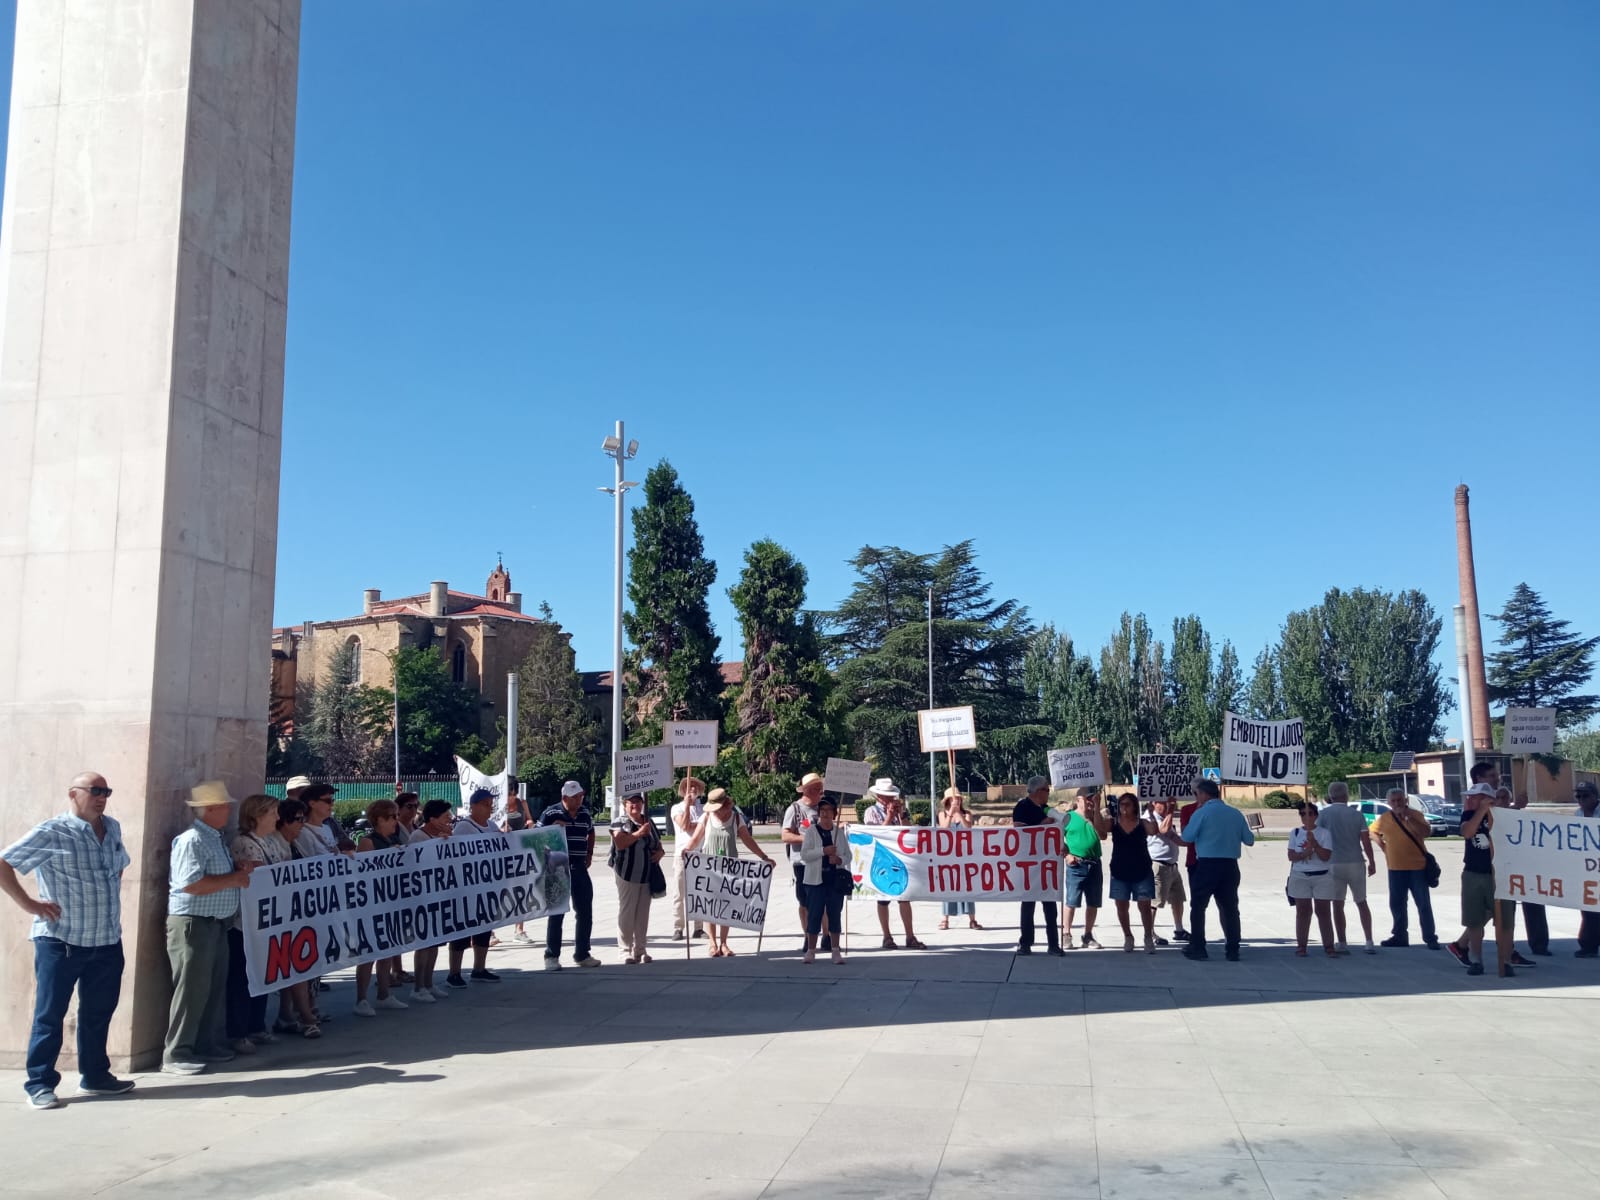 El grupo de manifestantes portó pancartas en señal de rechazo a la instalación de una planta embotelladora en la zona. L.N.C.